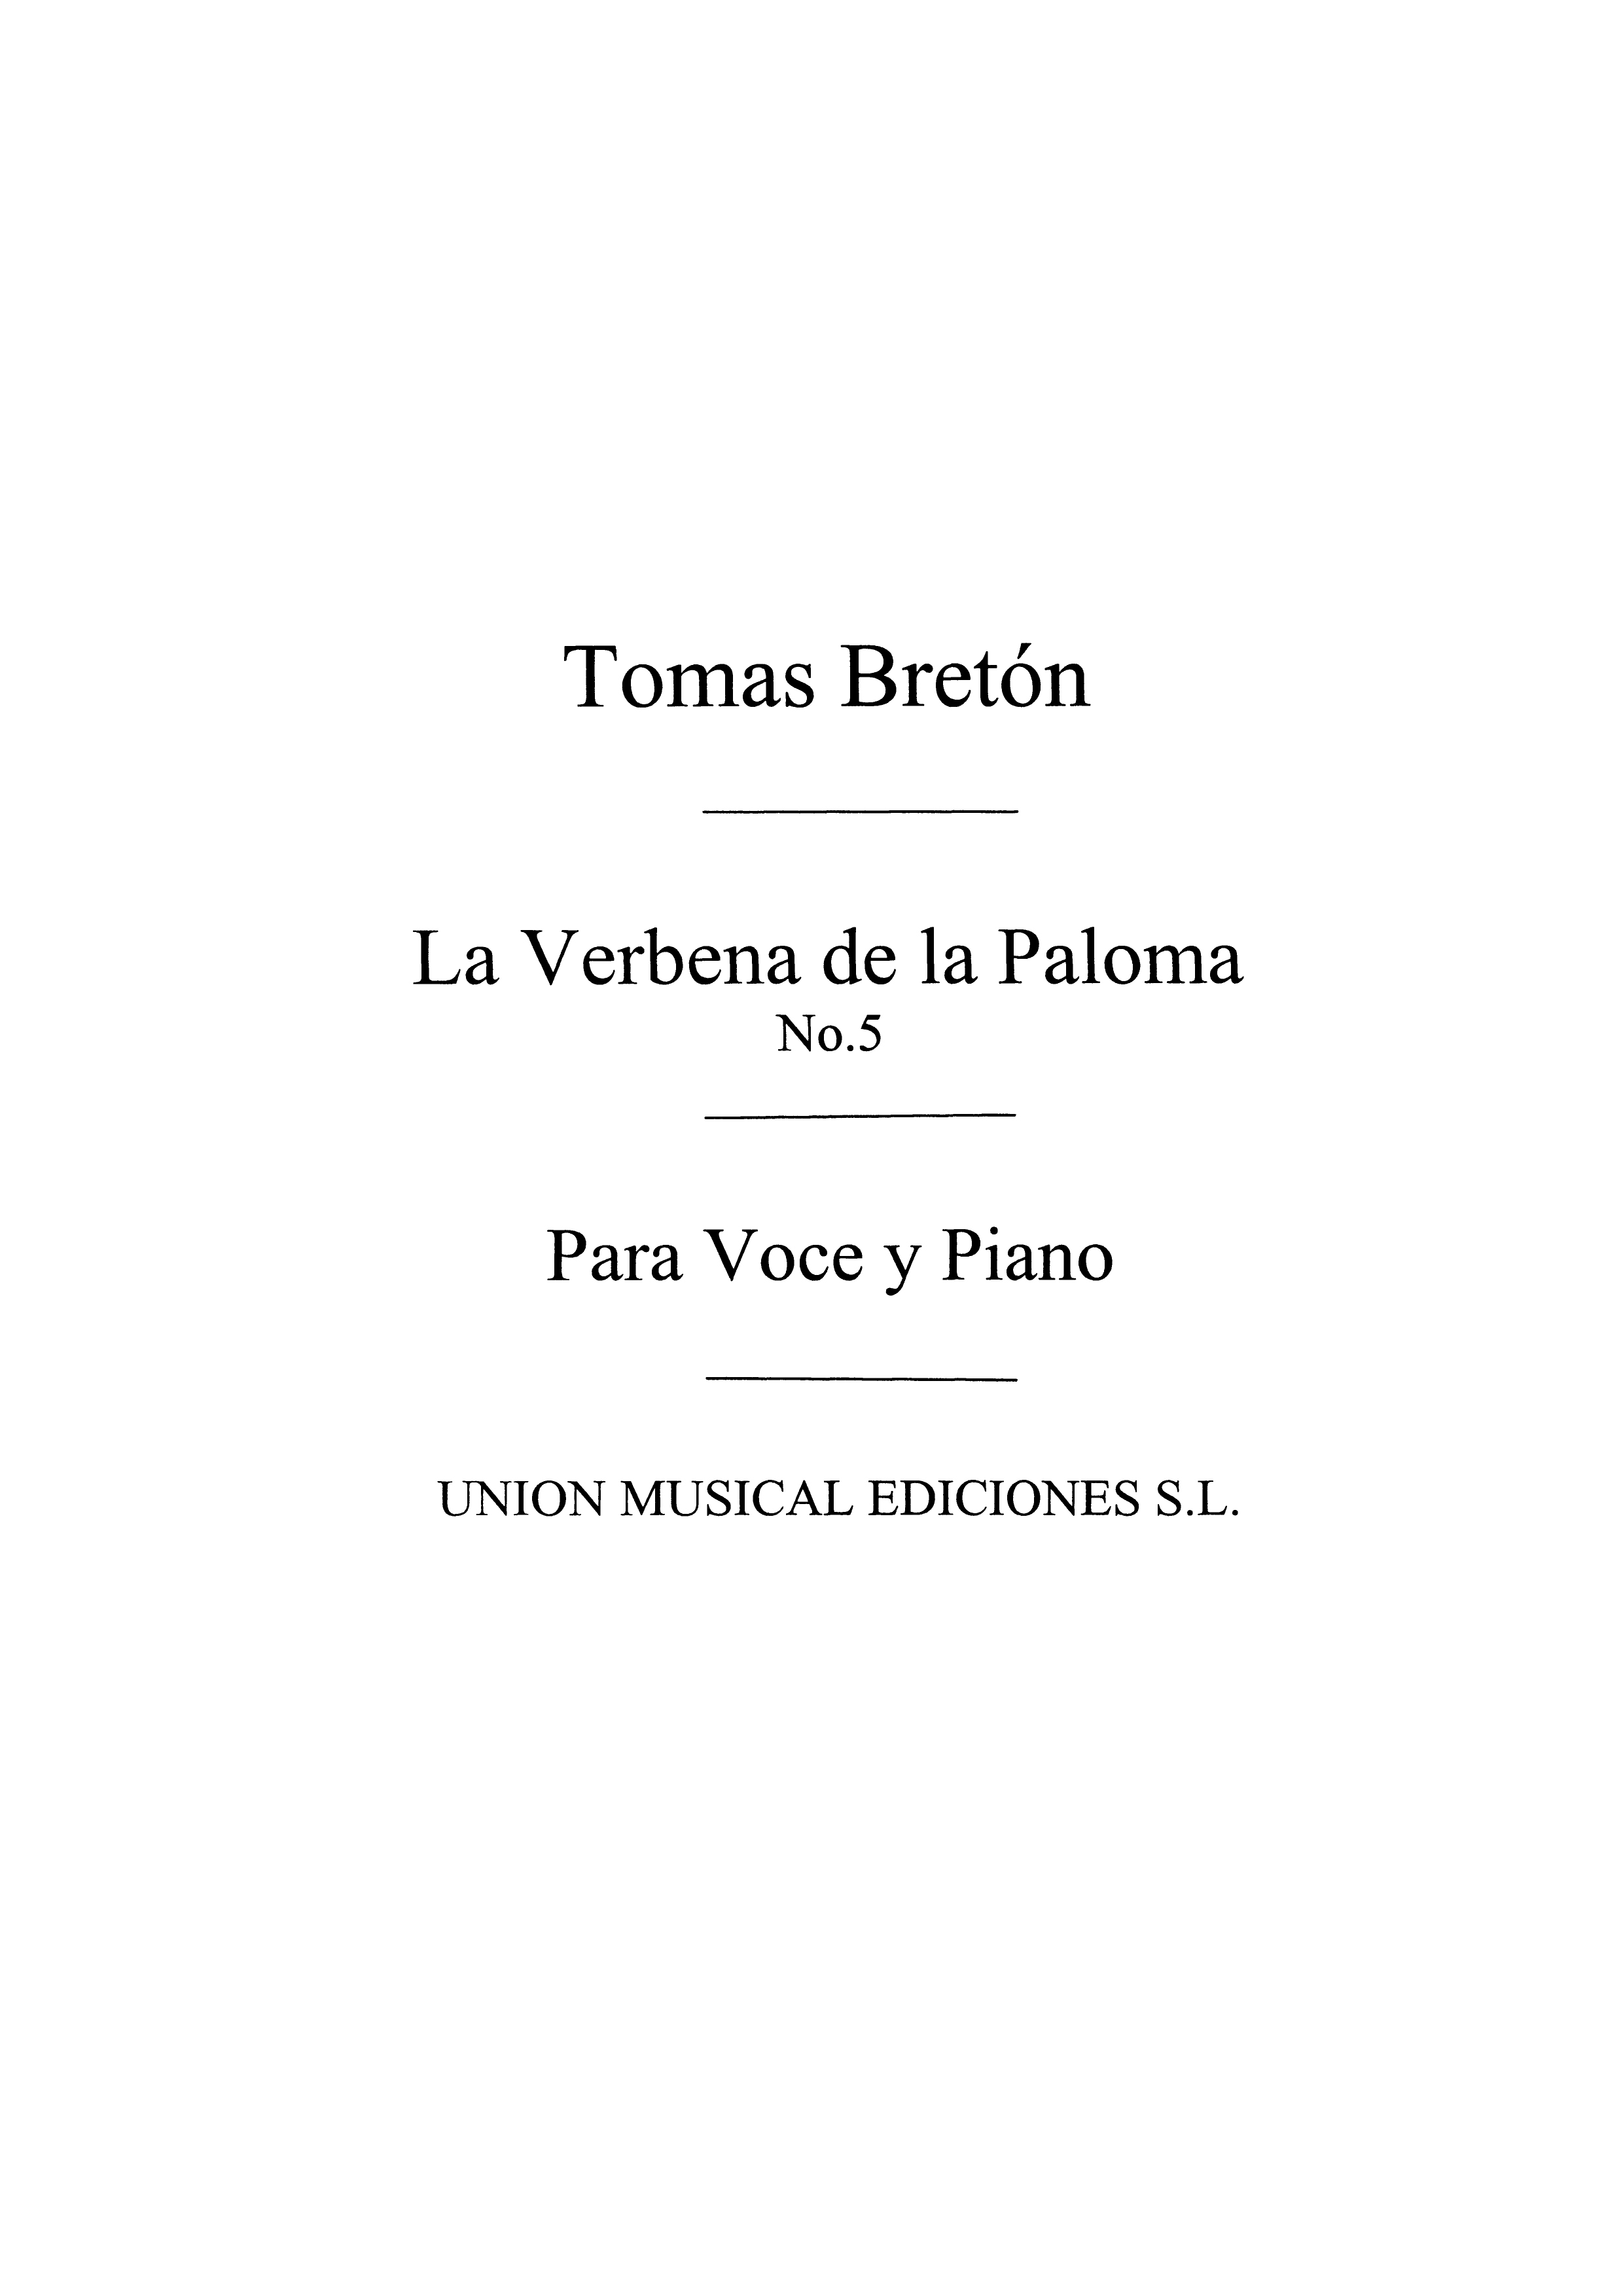 Tomas Breton: Tomas Breton: La Verbena De La Paloma No.5: Voice: Mixed Songbook